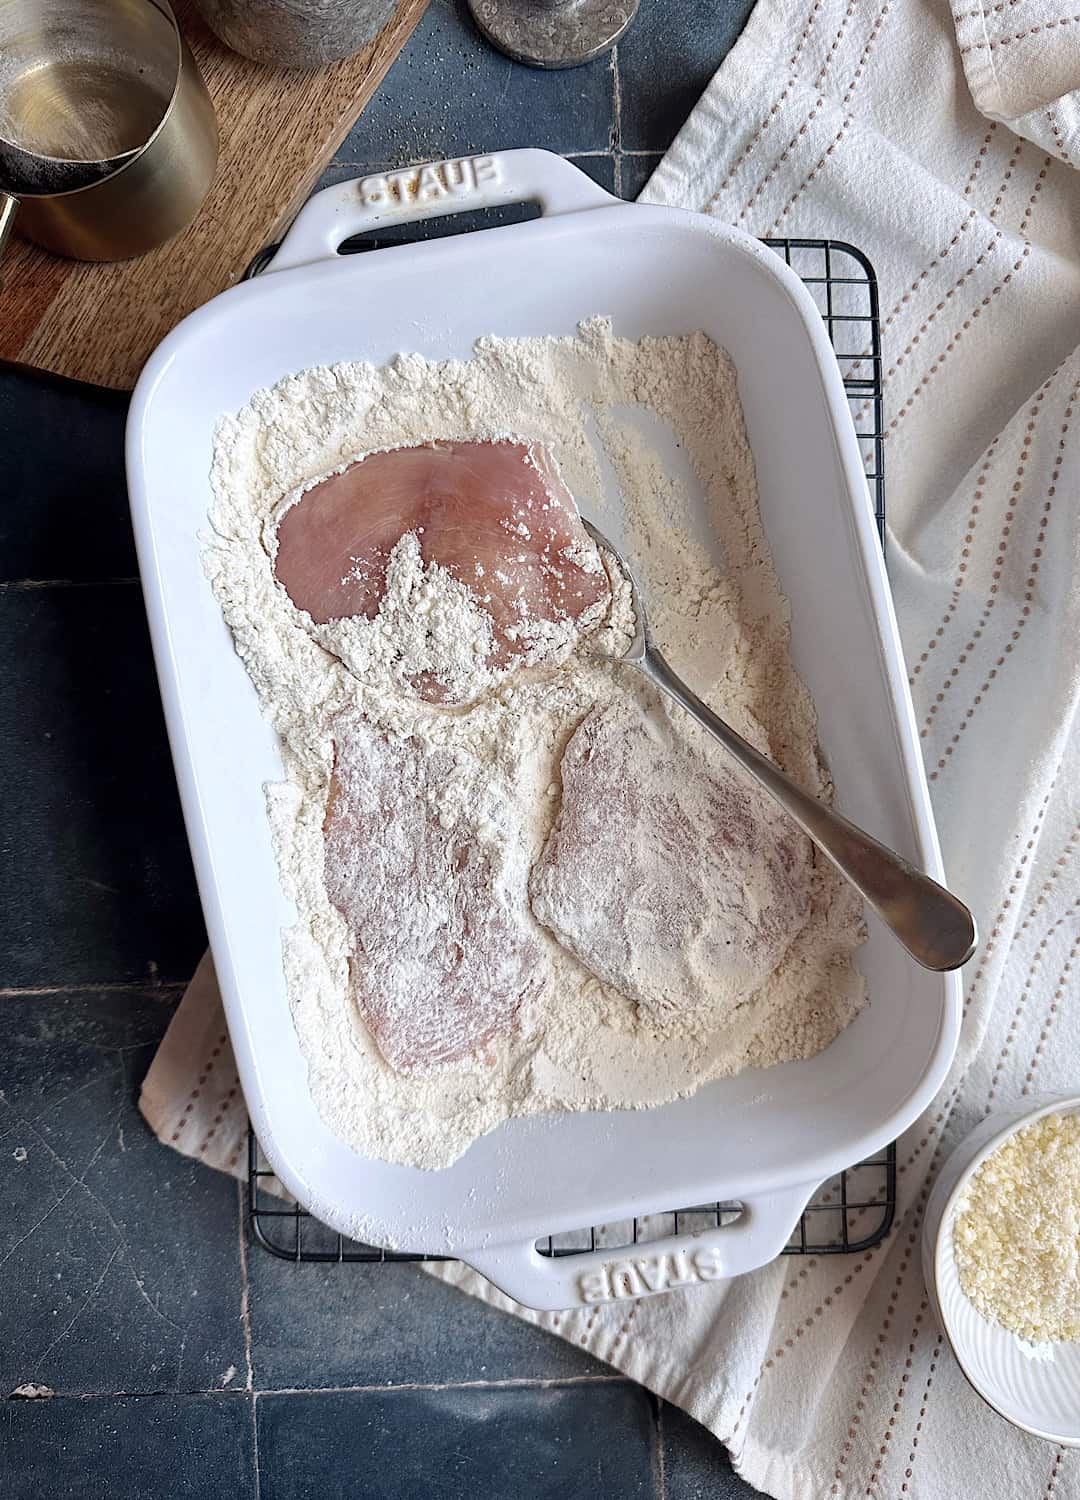 dredging chicken in flour in a pan